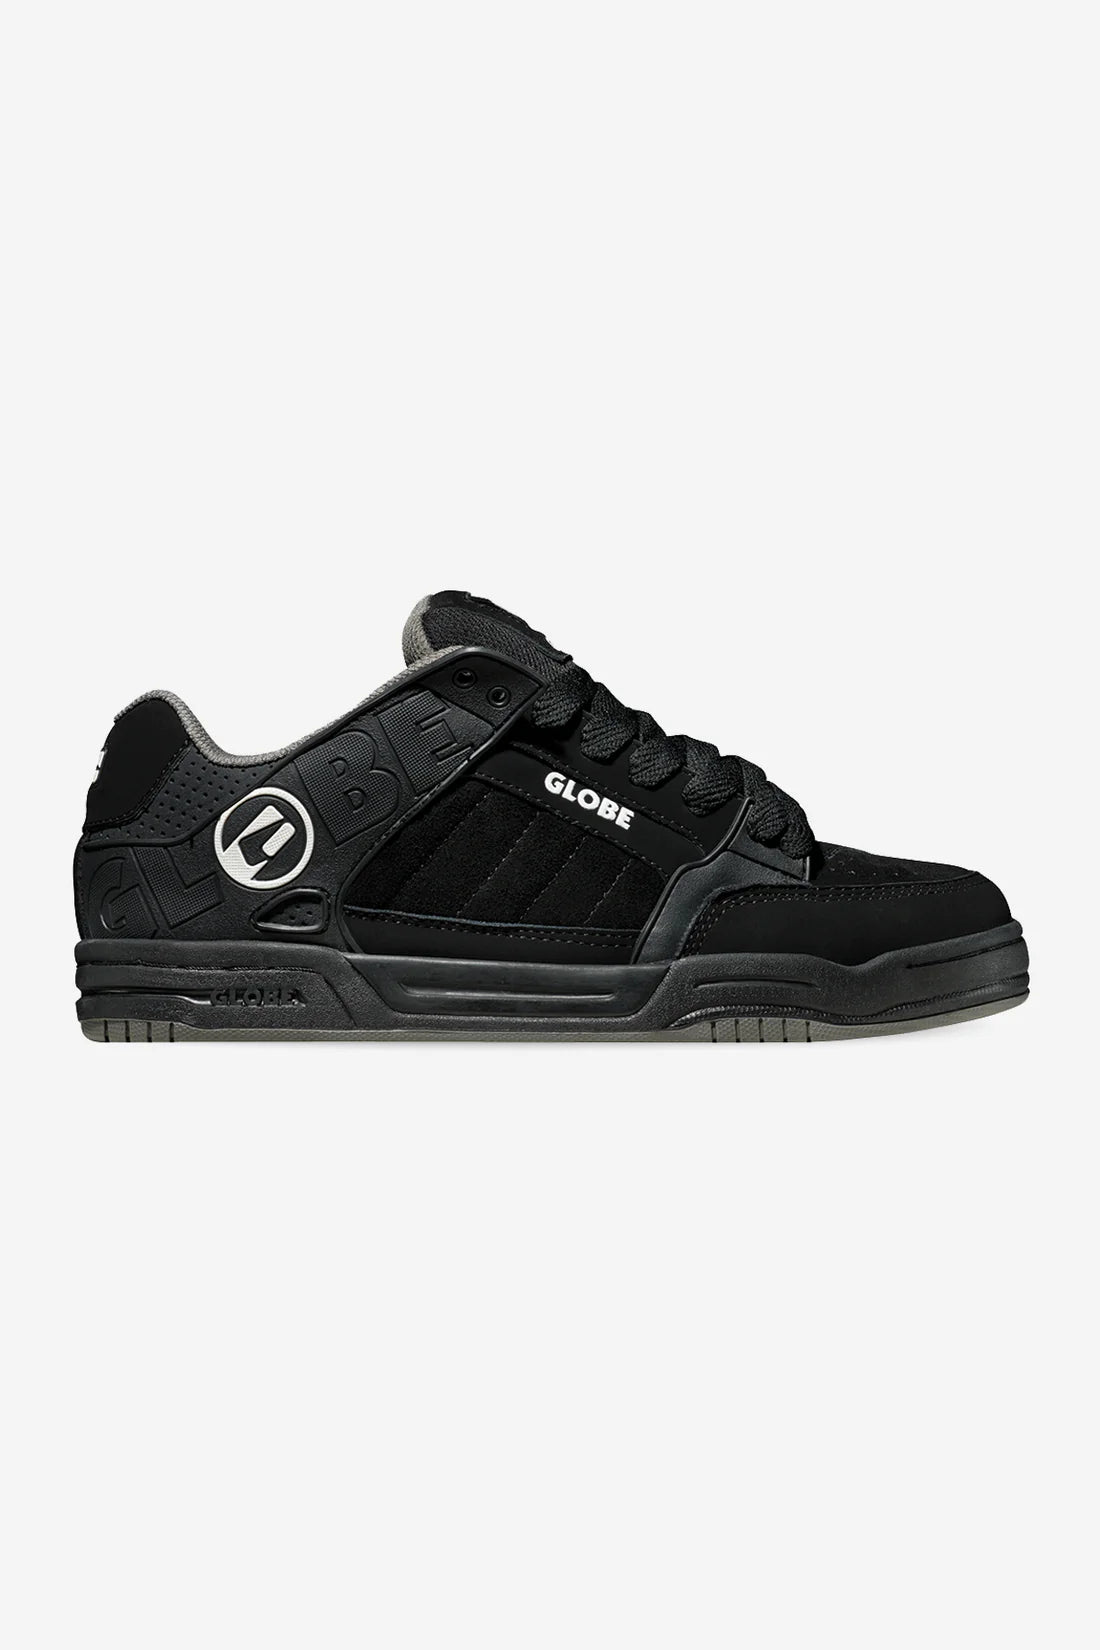 Tilt - Black/Black TPR - Skate Shoes